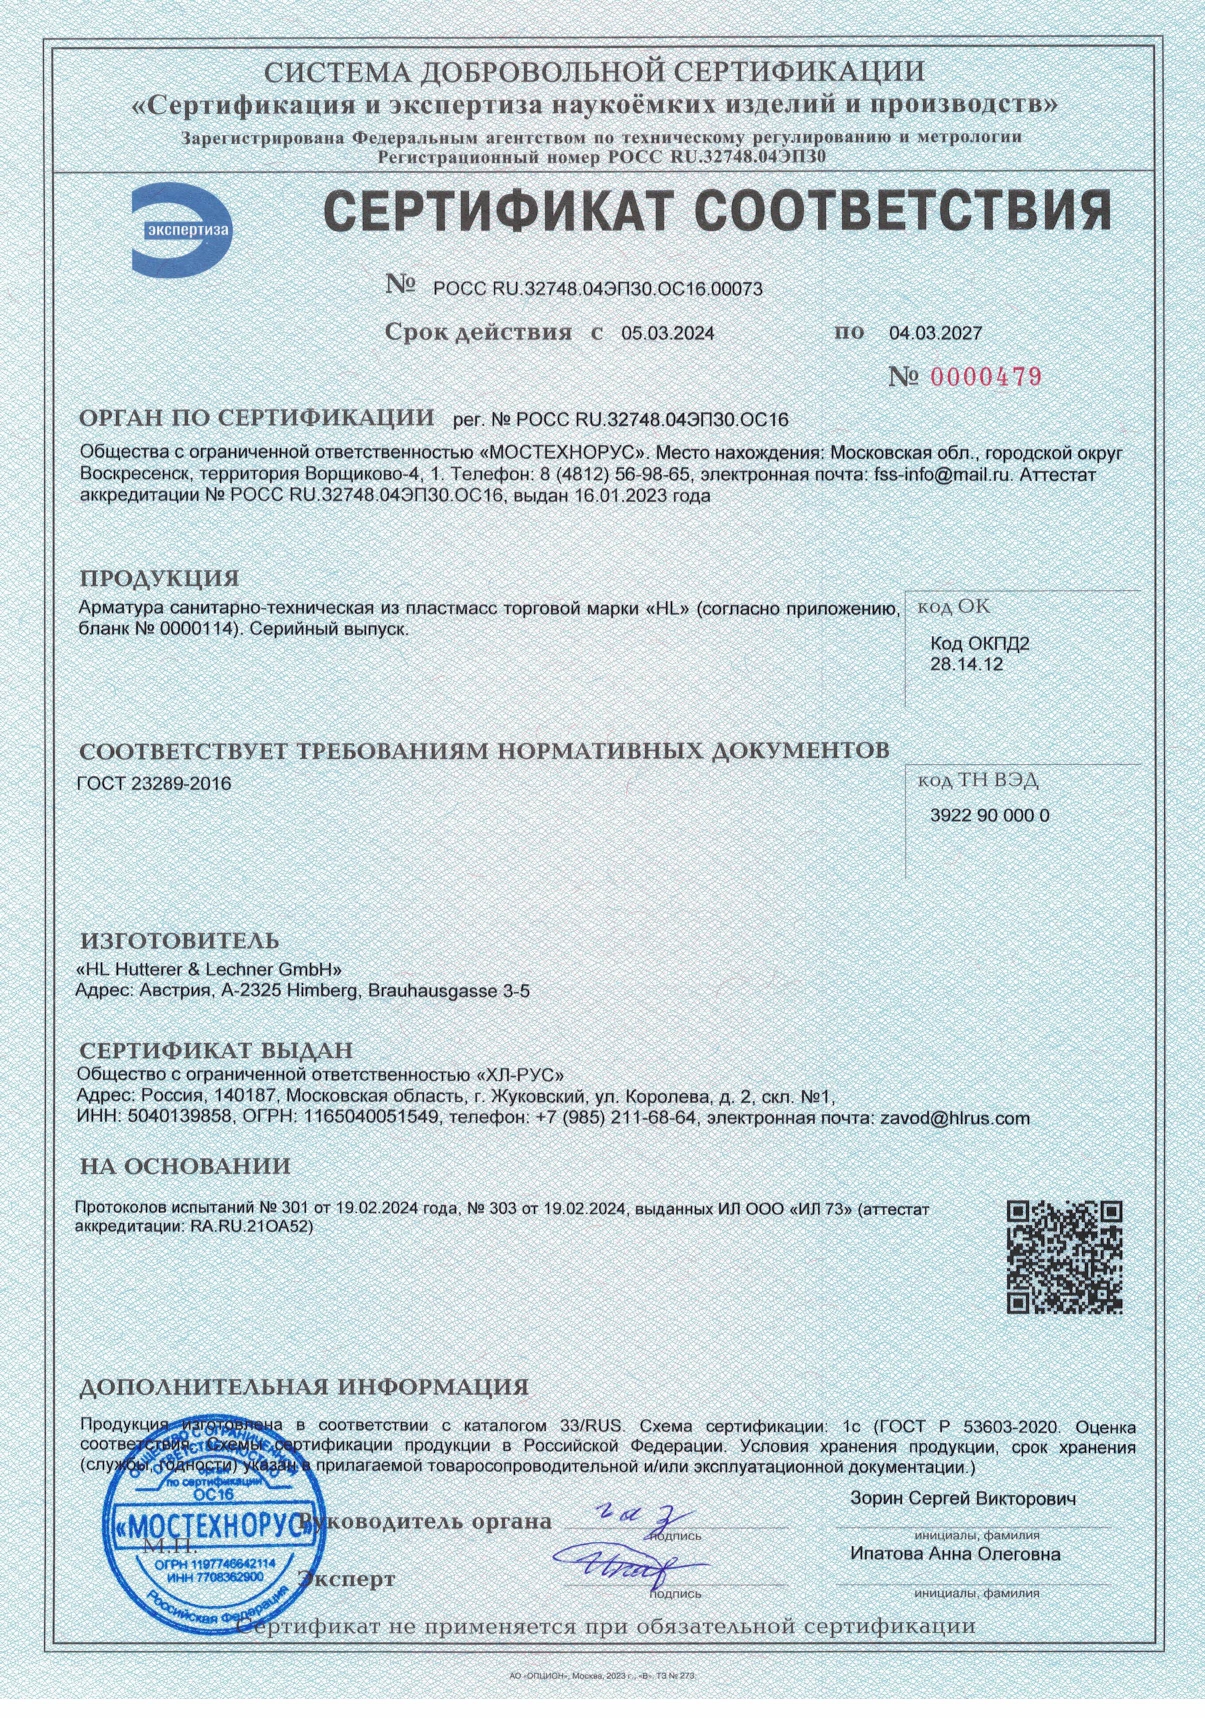 Сертификат соответствия на продукцию HL российского производства OOO "ХЛ-РУС" каталог 33/RUS